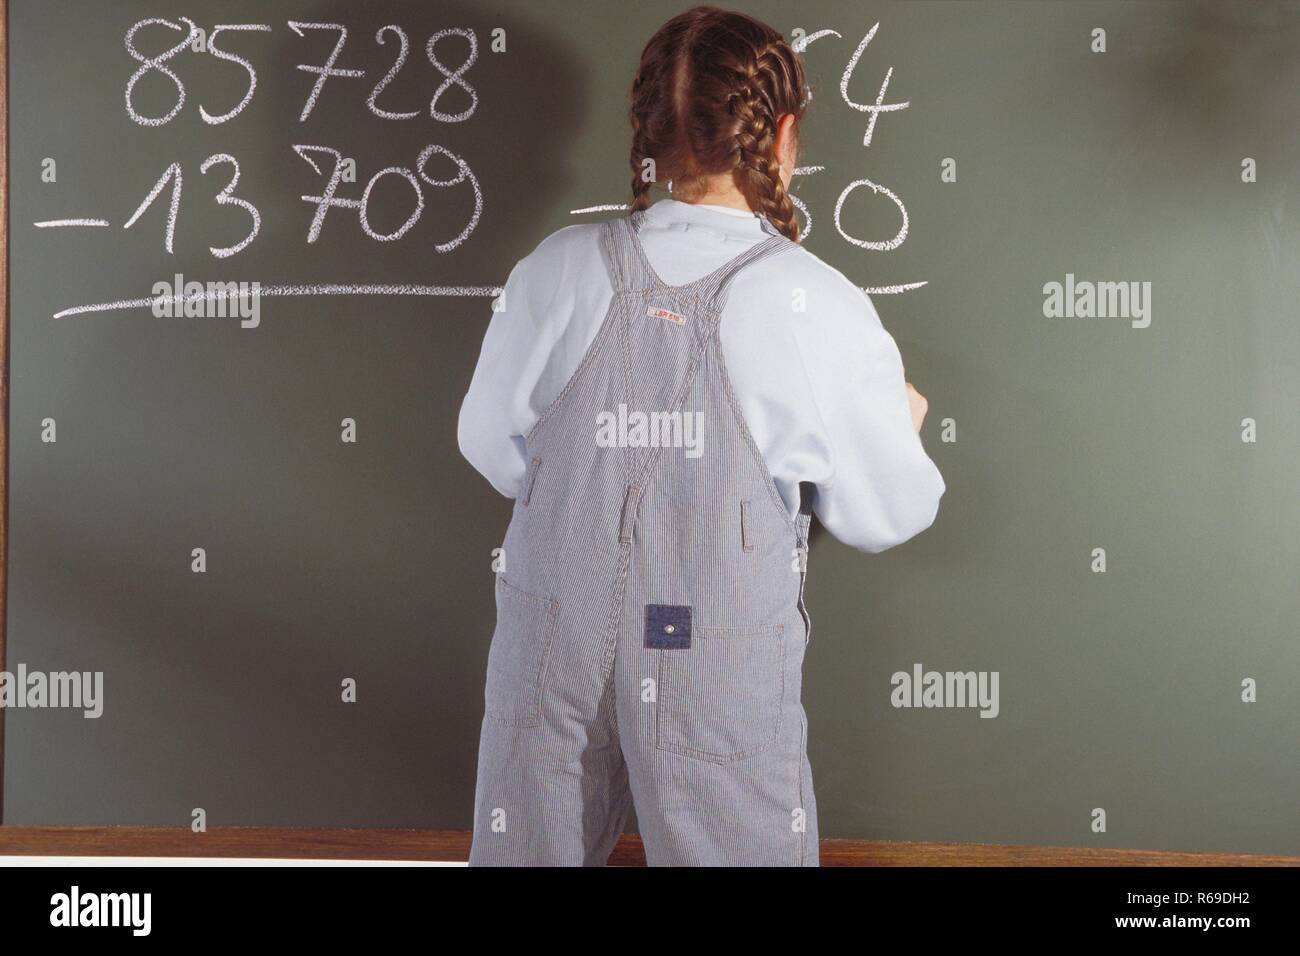 Ritratto, Innenraum, 10-jaehriges Maedchen bekleidet mit Jeanslatzhose steht an der Tafel und rechnet eine Mathematik Aufgabe Foto Stock